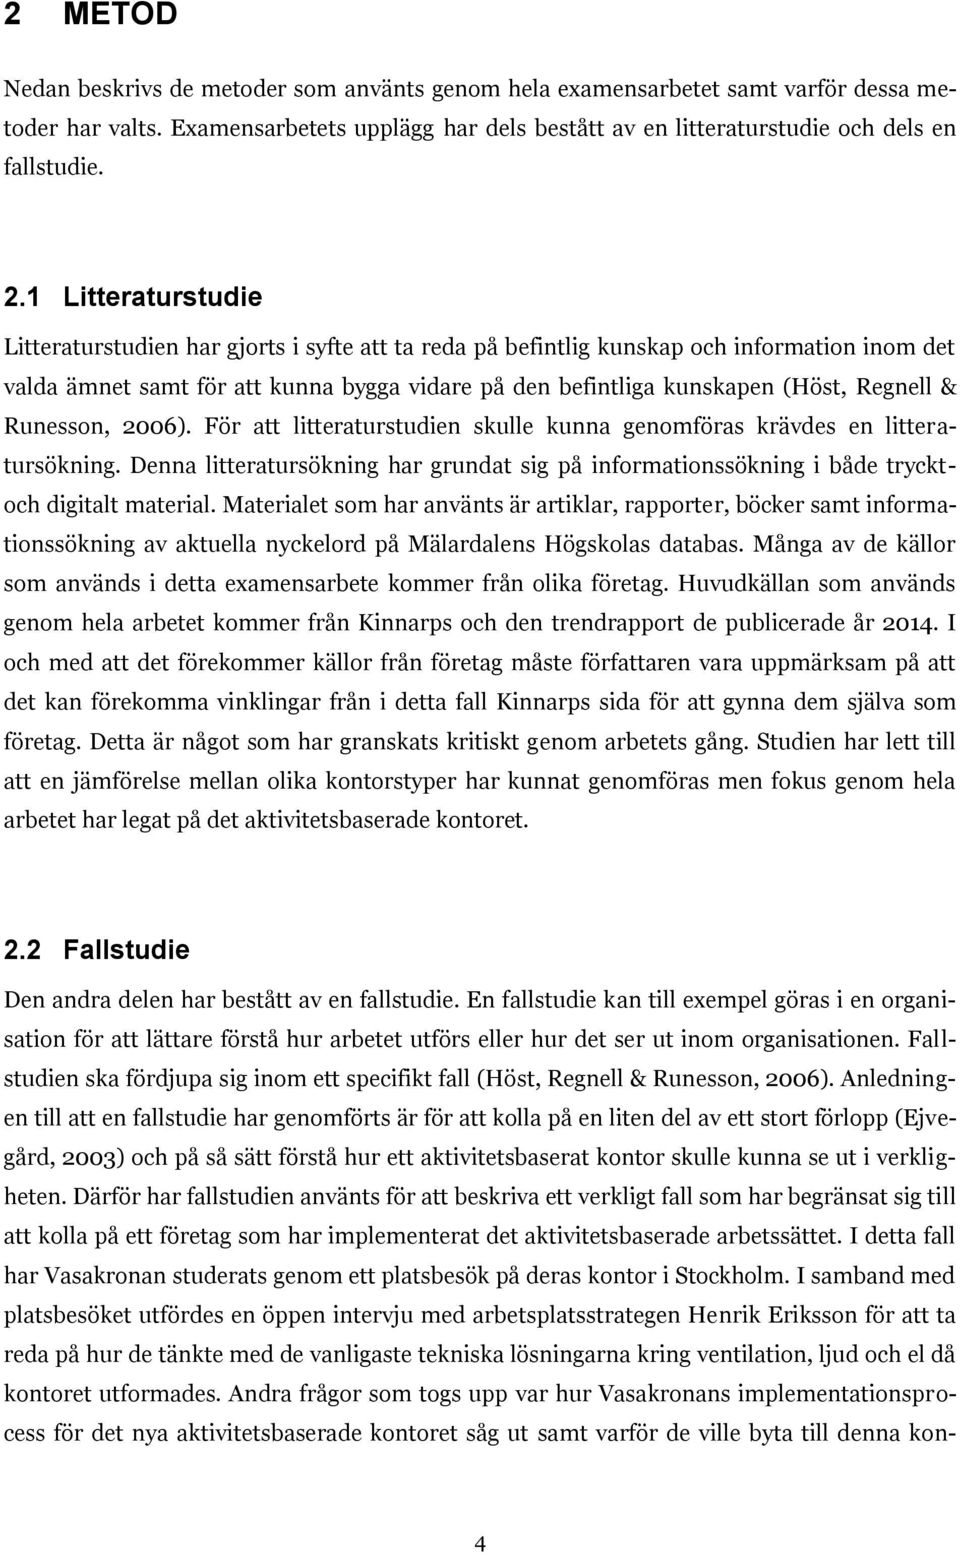 Regnell & Runesson, 2006). För att litteraturstudien skulle kunna genomföras krävdes en litteratursökning.